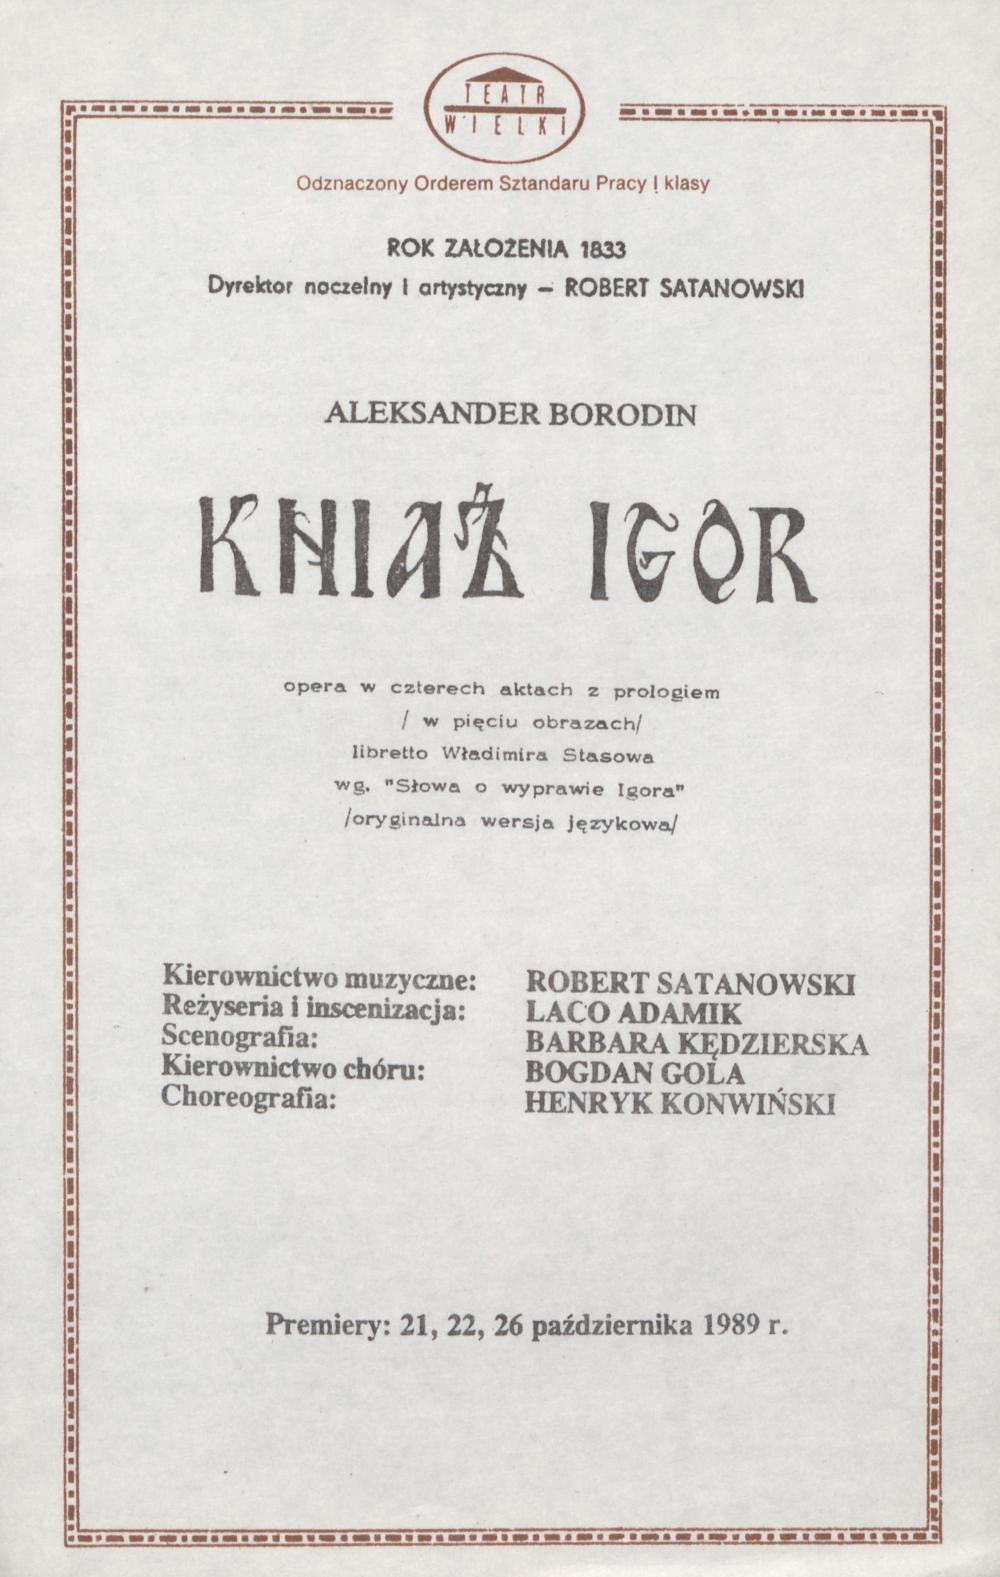 Wkładka obsadowa „Kniaź Igor” Aleksander Borodin 26-10-1989